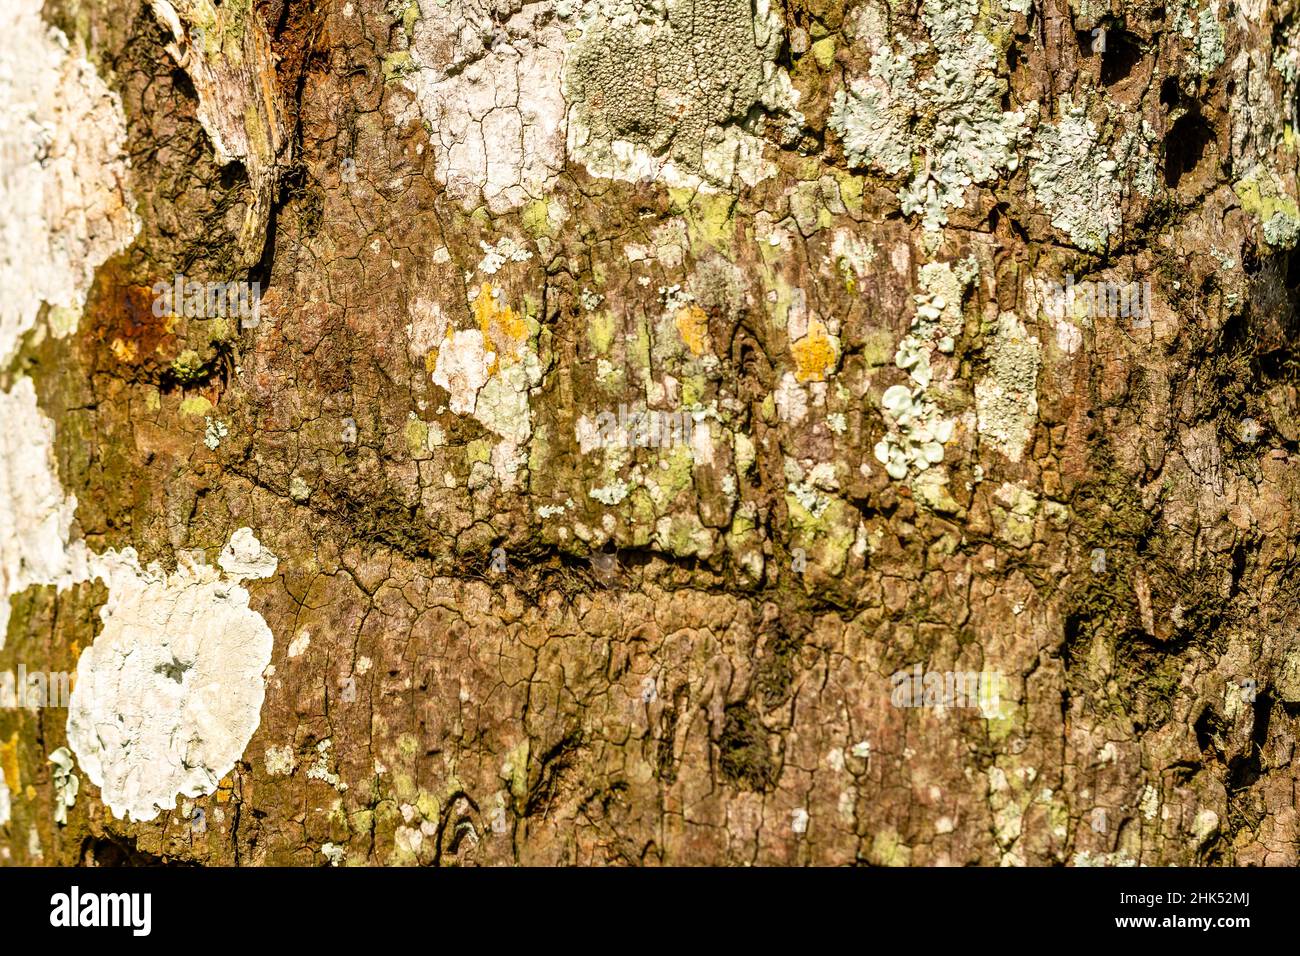 Braune Rinde mit weißem Pilz bedeckt, für Natur-Themen Hintergrund verwendet Stockfoto